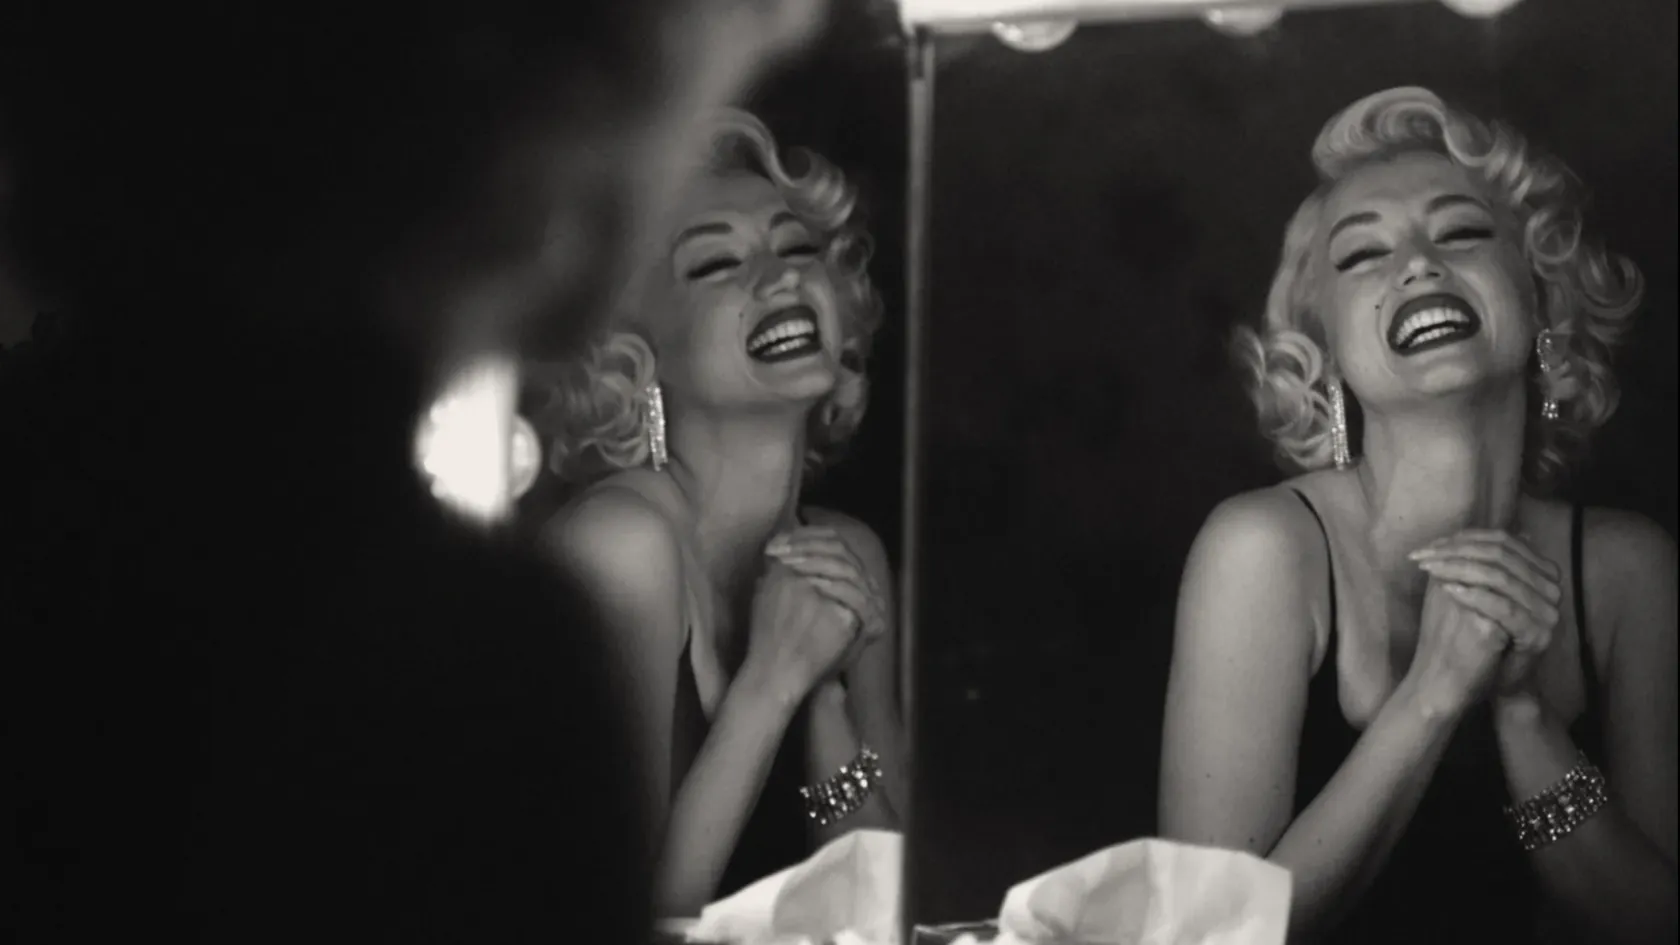 Túlzó, elnyújtott, ízléstelen giccsvihar lett a Marilyn Monroe-film